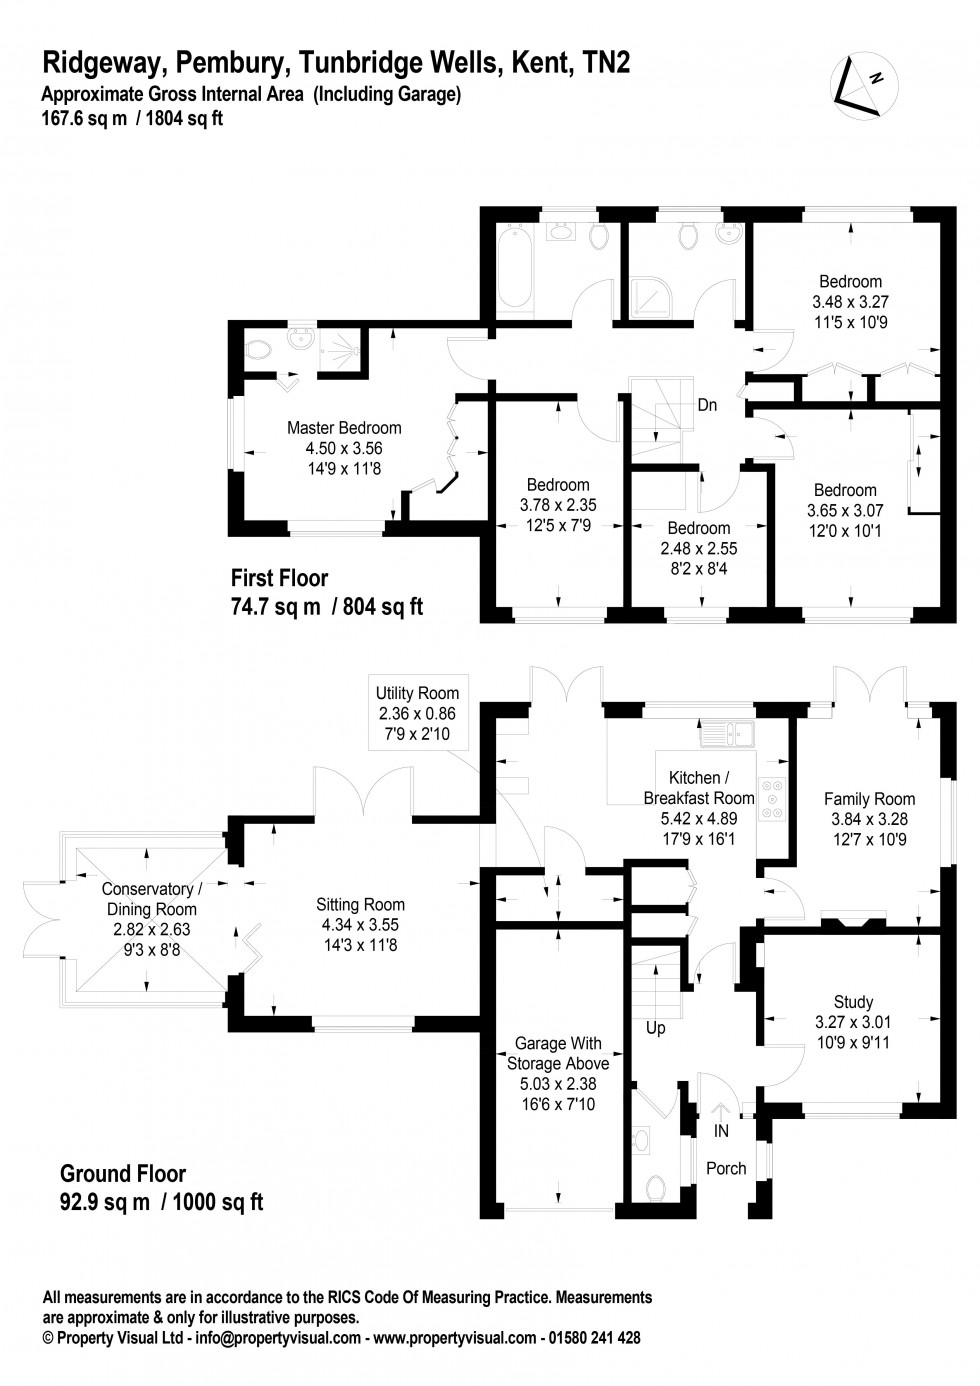 Floorplan for 5 Bedroom 3 Bathroom Detached House, Ridgeway, Tunbridge Wells